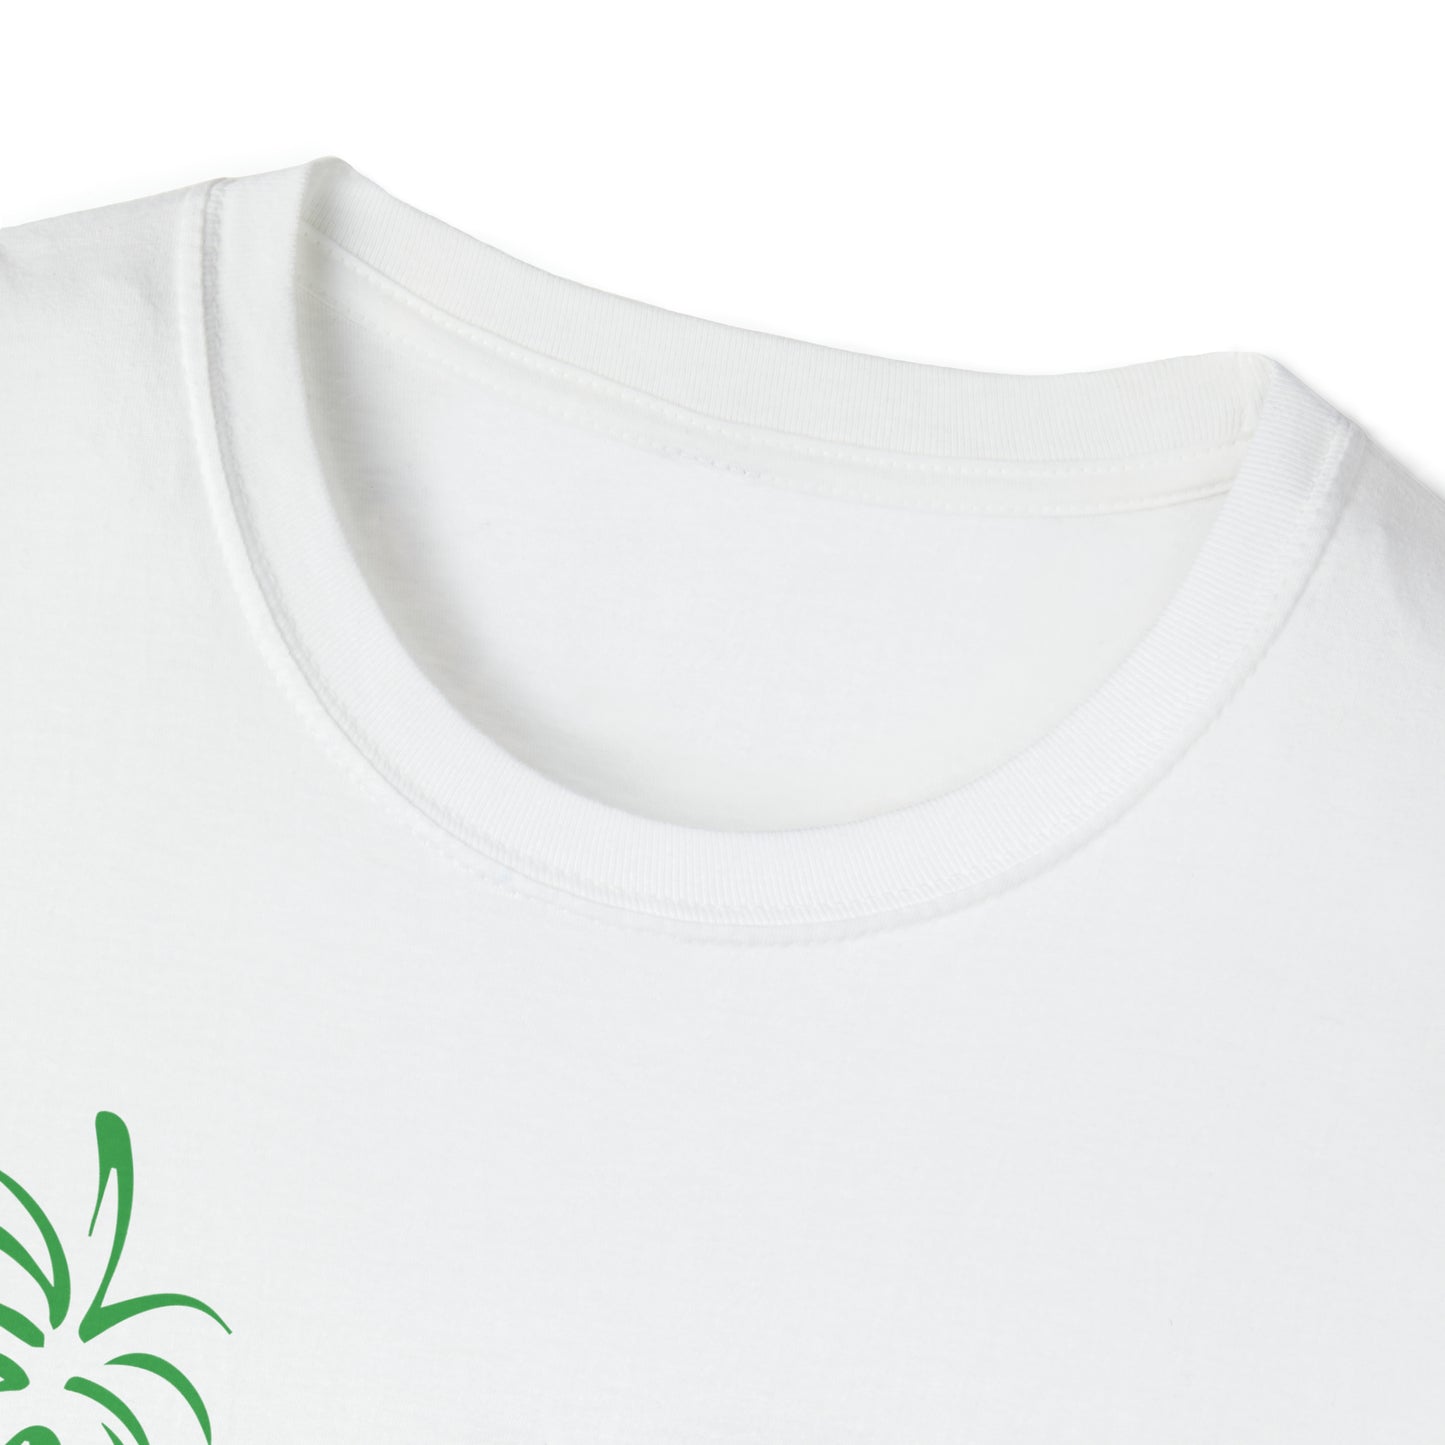 Palma Sola Botanical Garden Unisex Softstyle T-Shirt